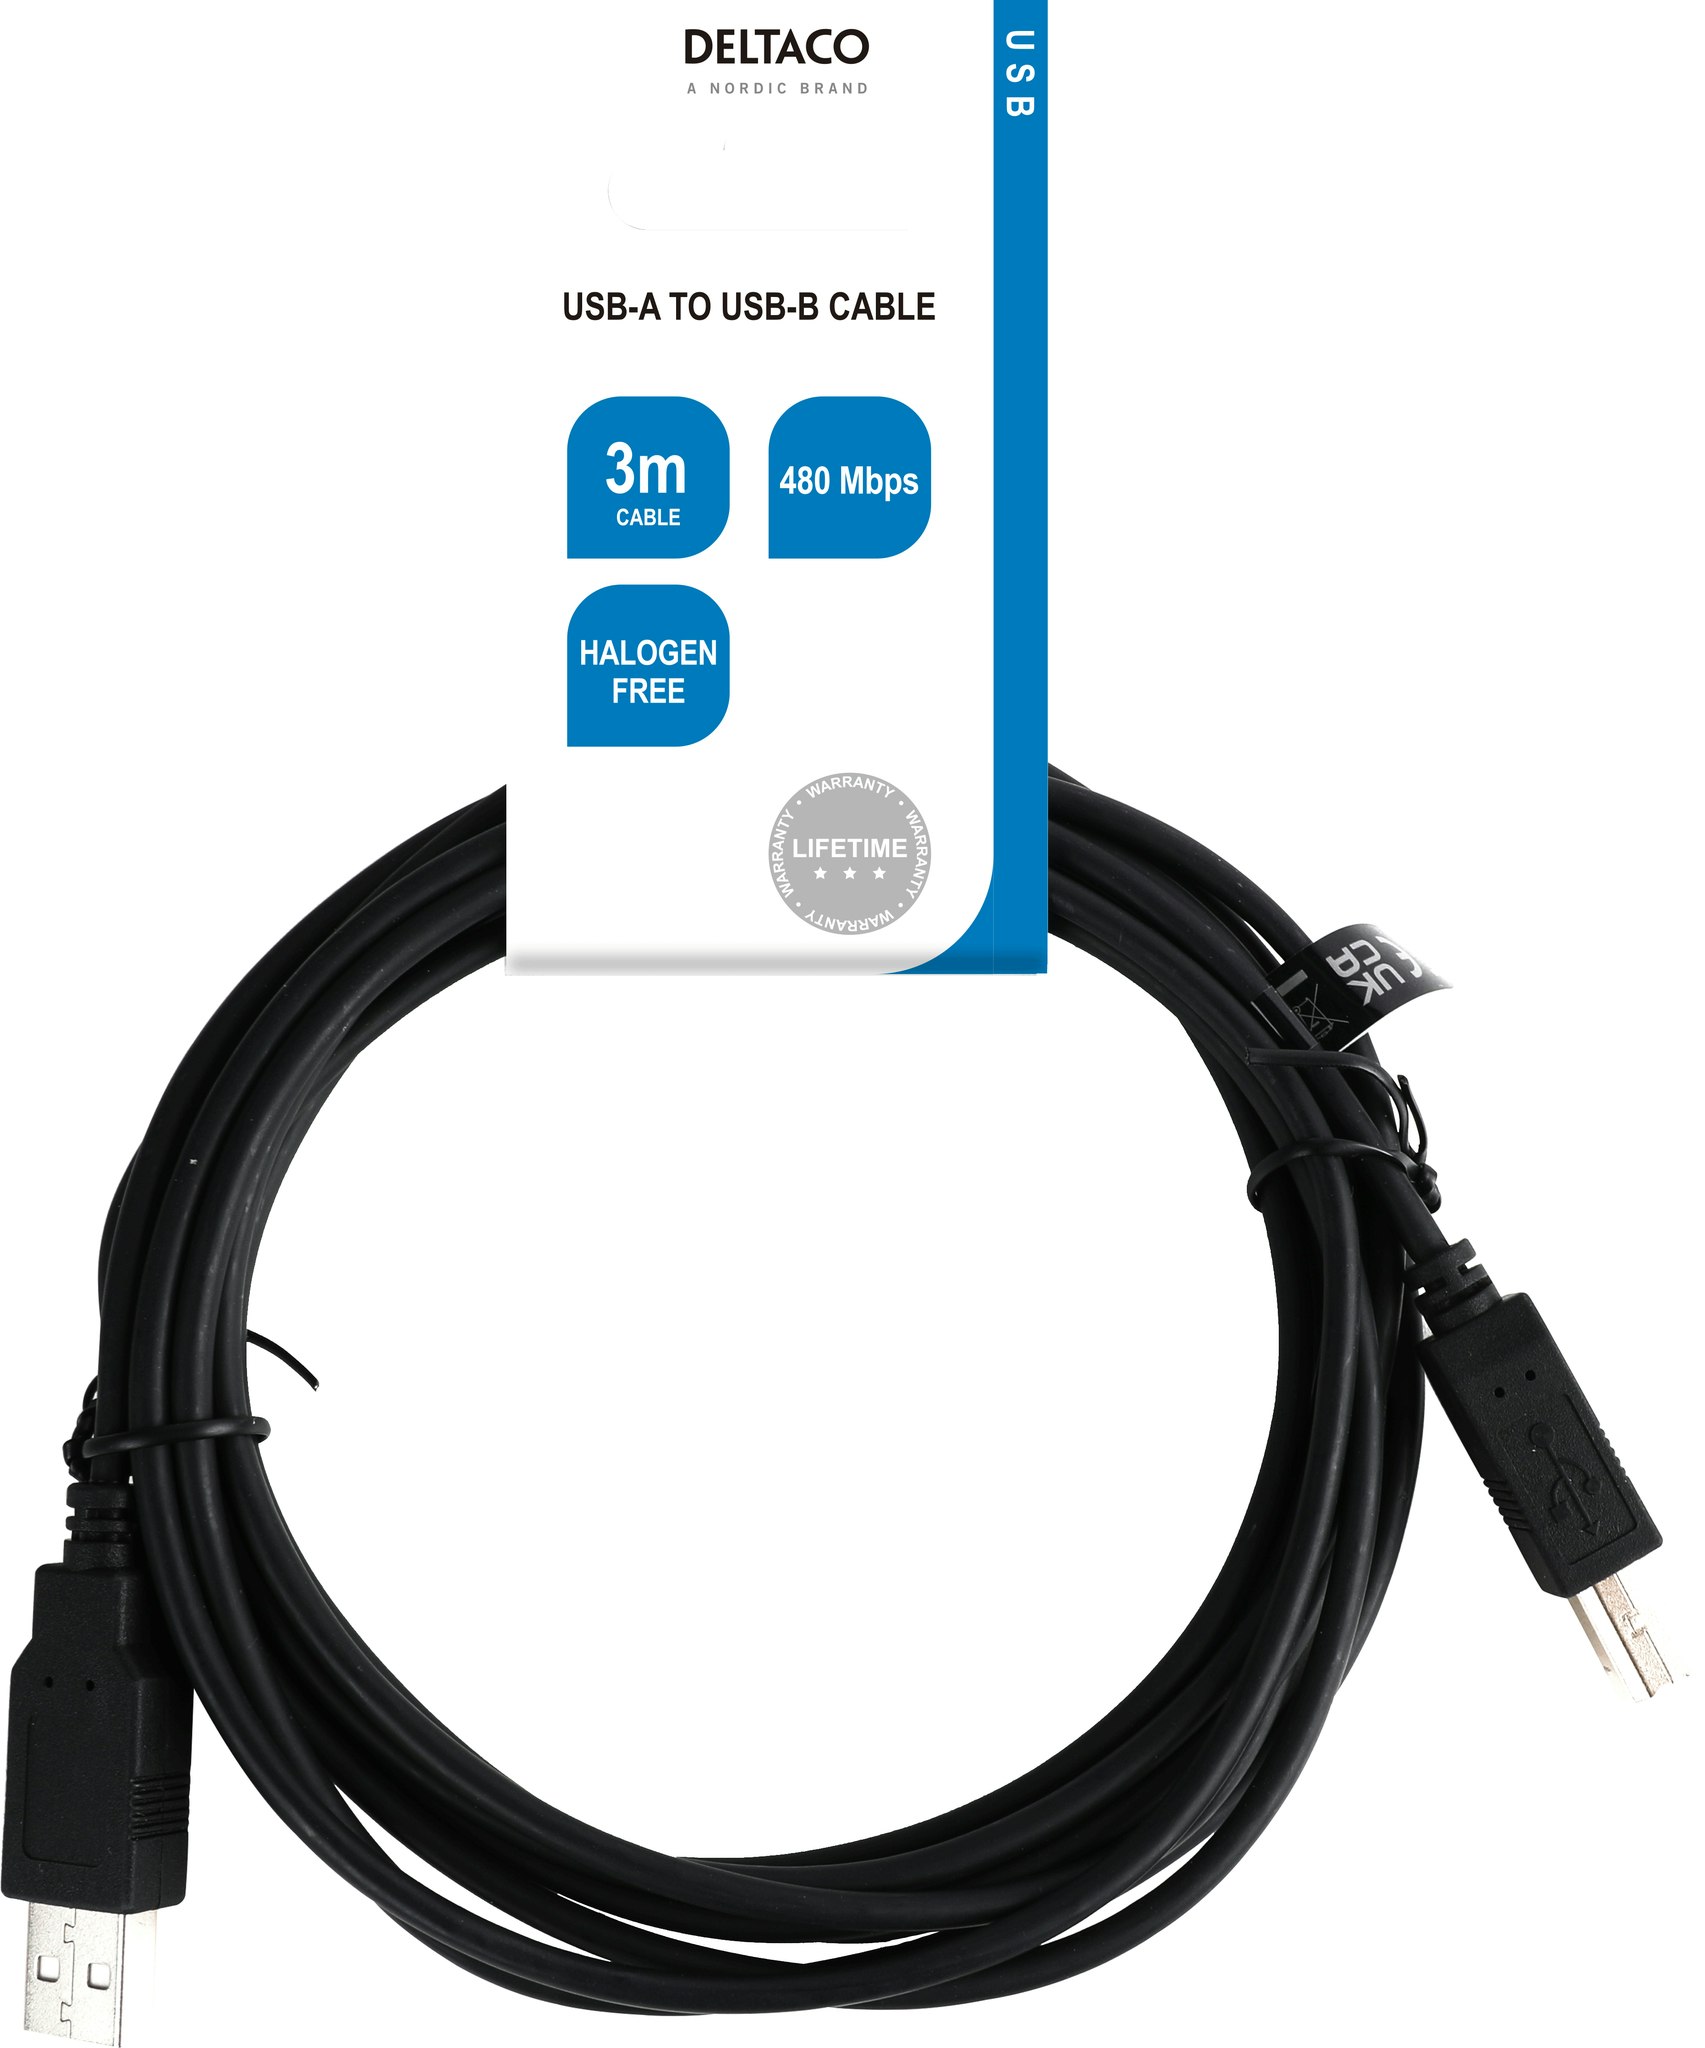 Deltaco USB 2.0 kabel USB-A han - USB-B han, LSZH, 3m, svart